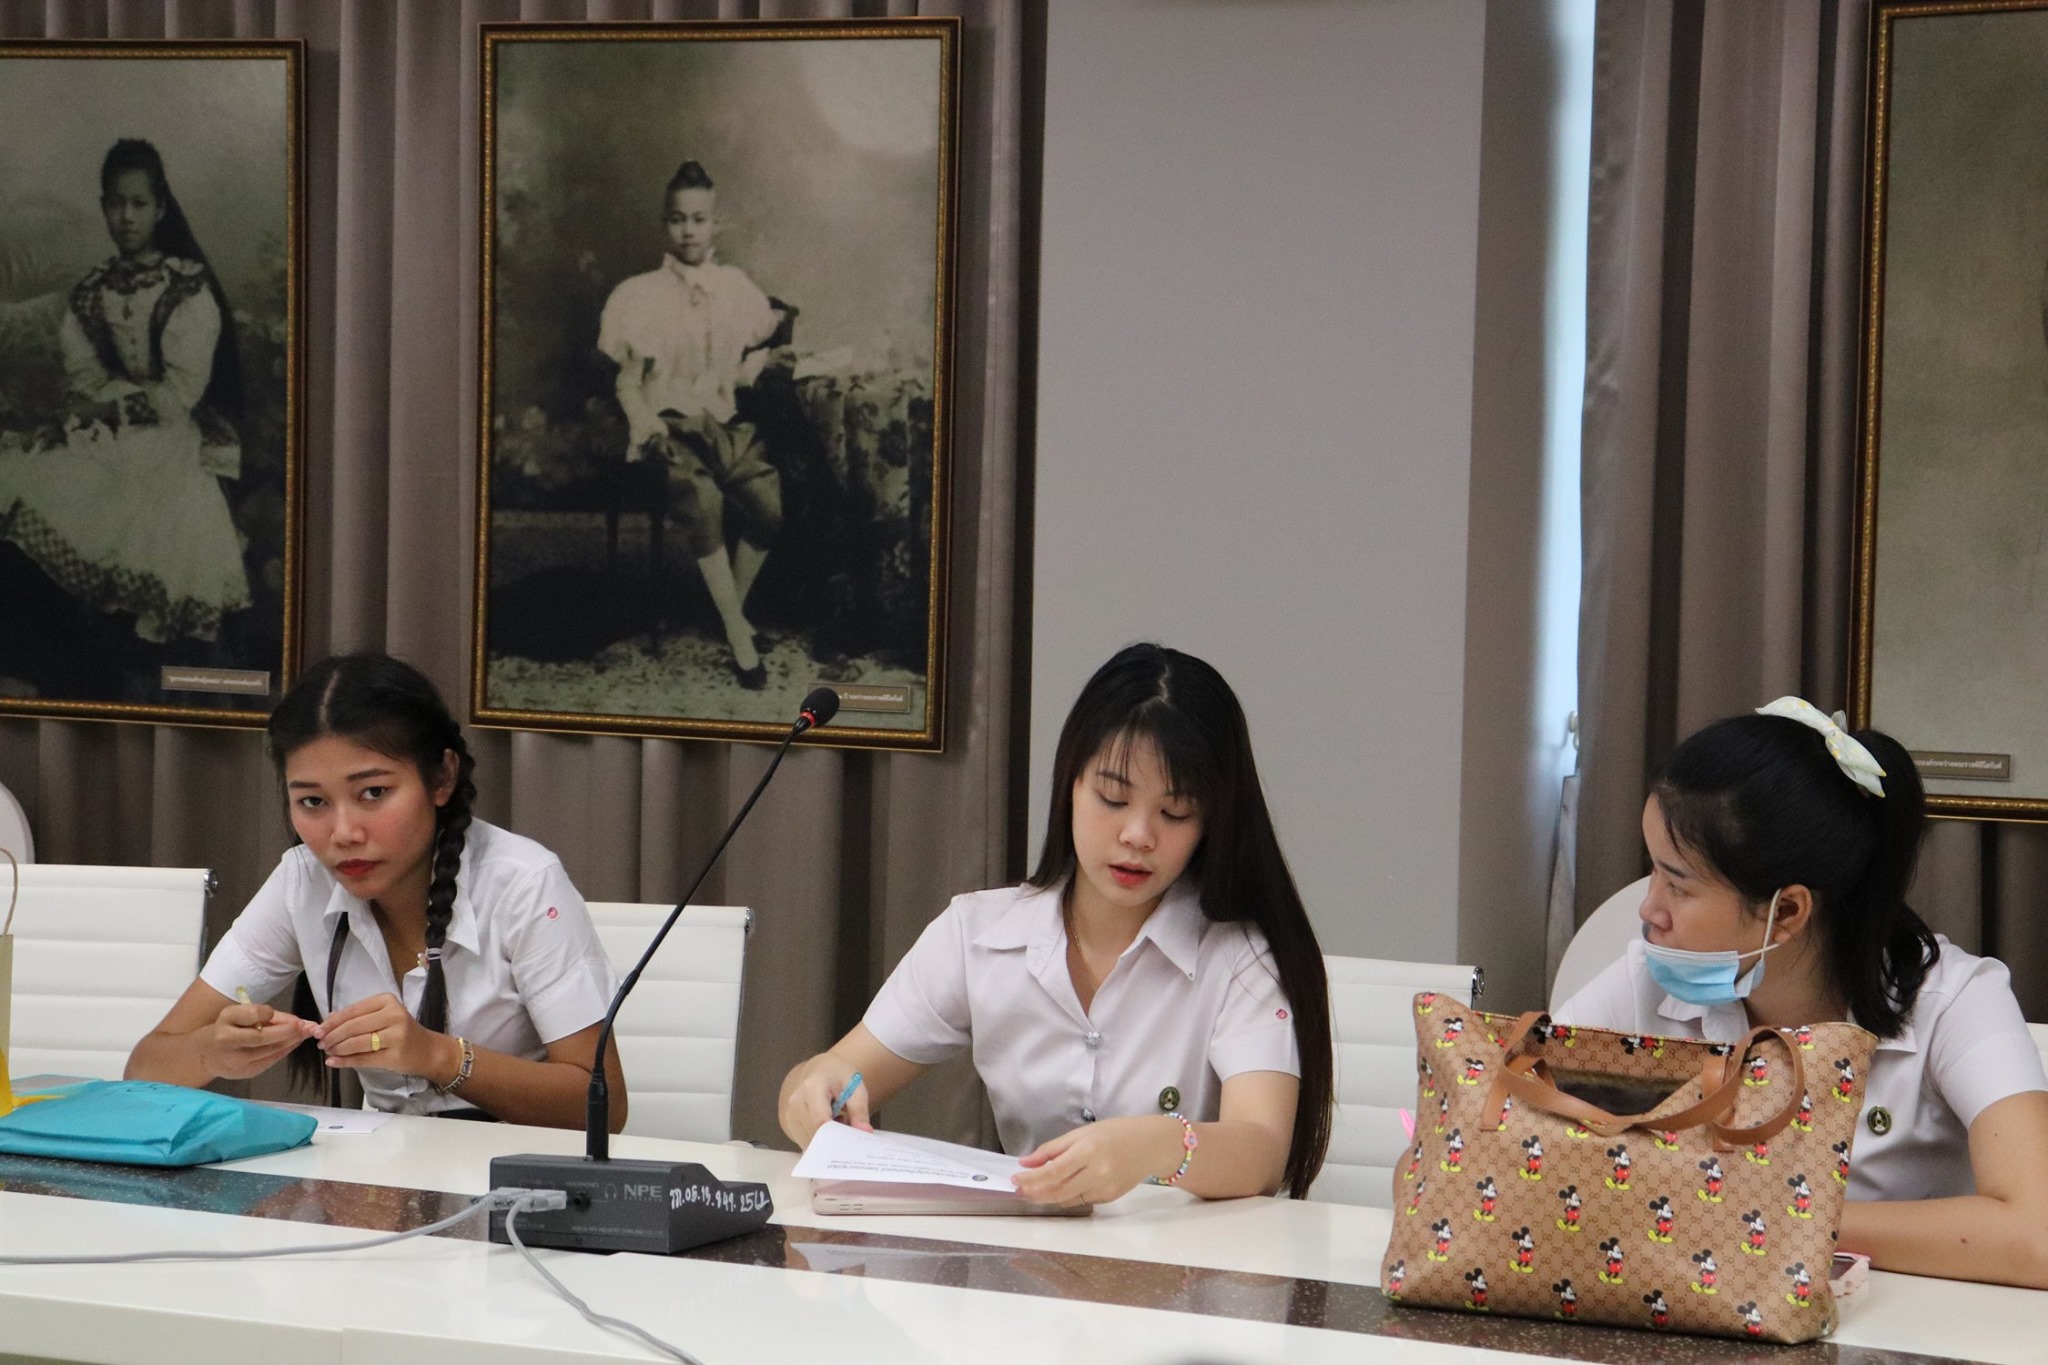 11 สิงหาคม 2563 งานวิชาศึกษาทั่วไปนำนักศึกษาเข้าเรียนรู้ ณ หอนิทัศน์ราชภัฏ 